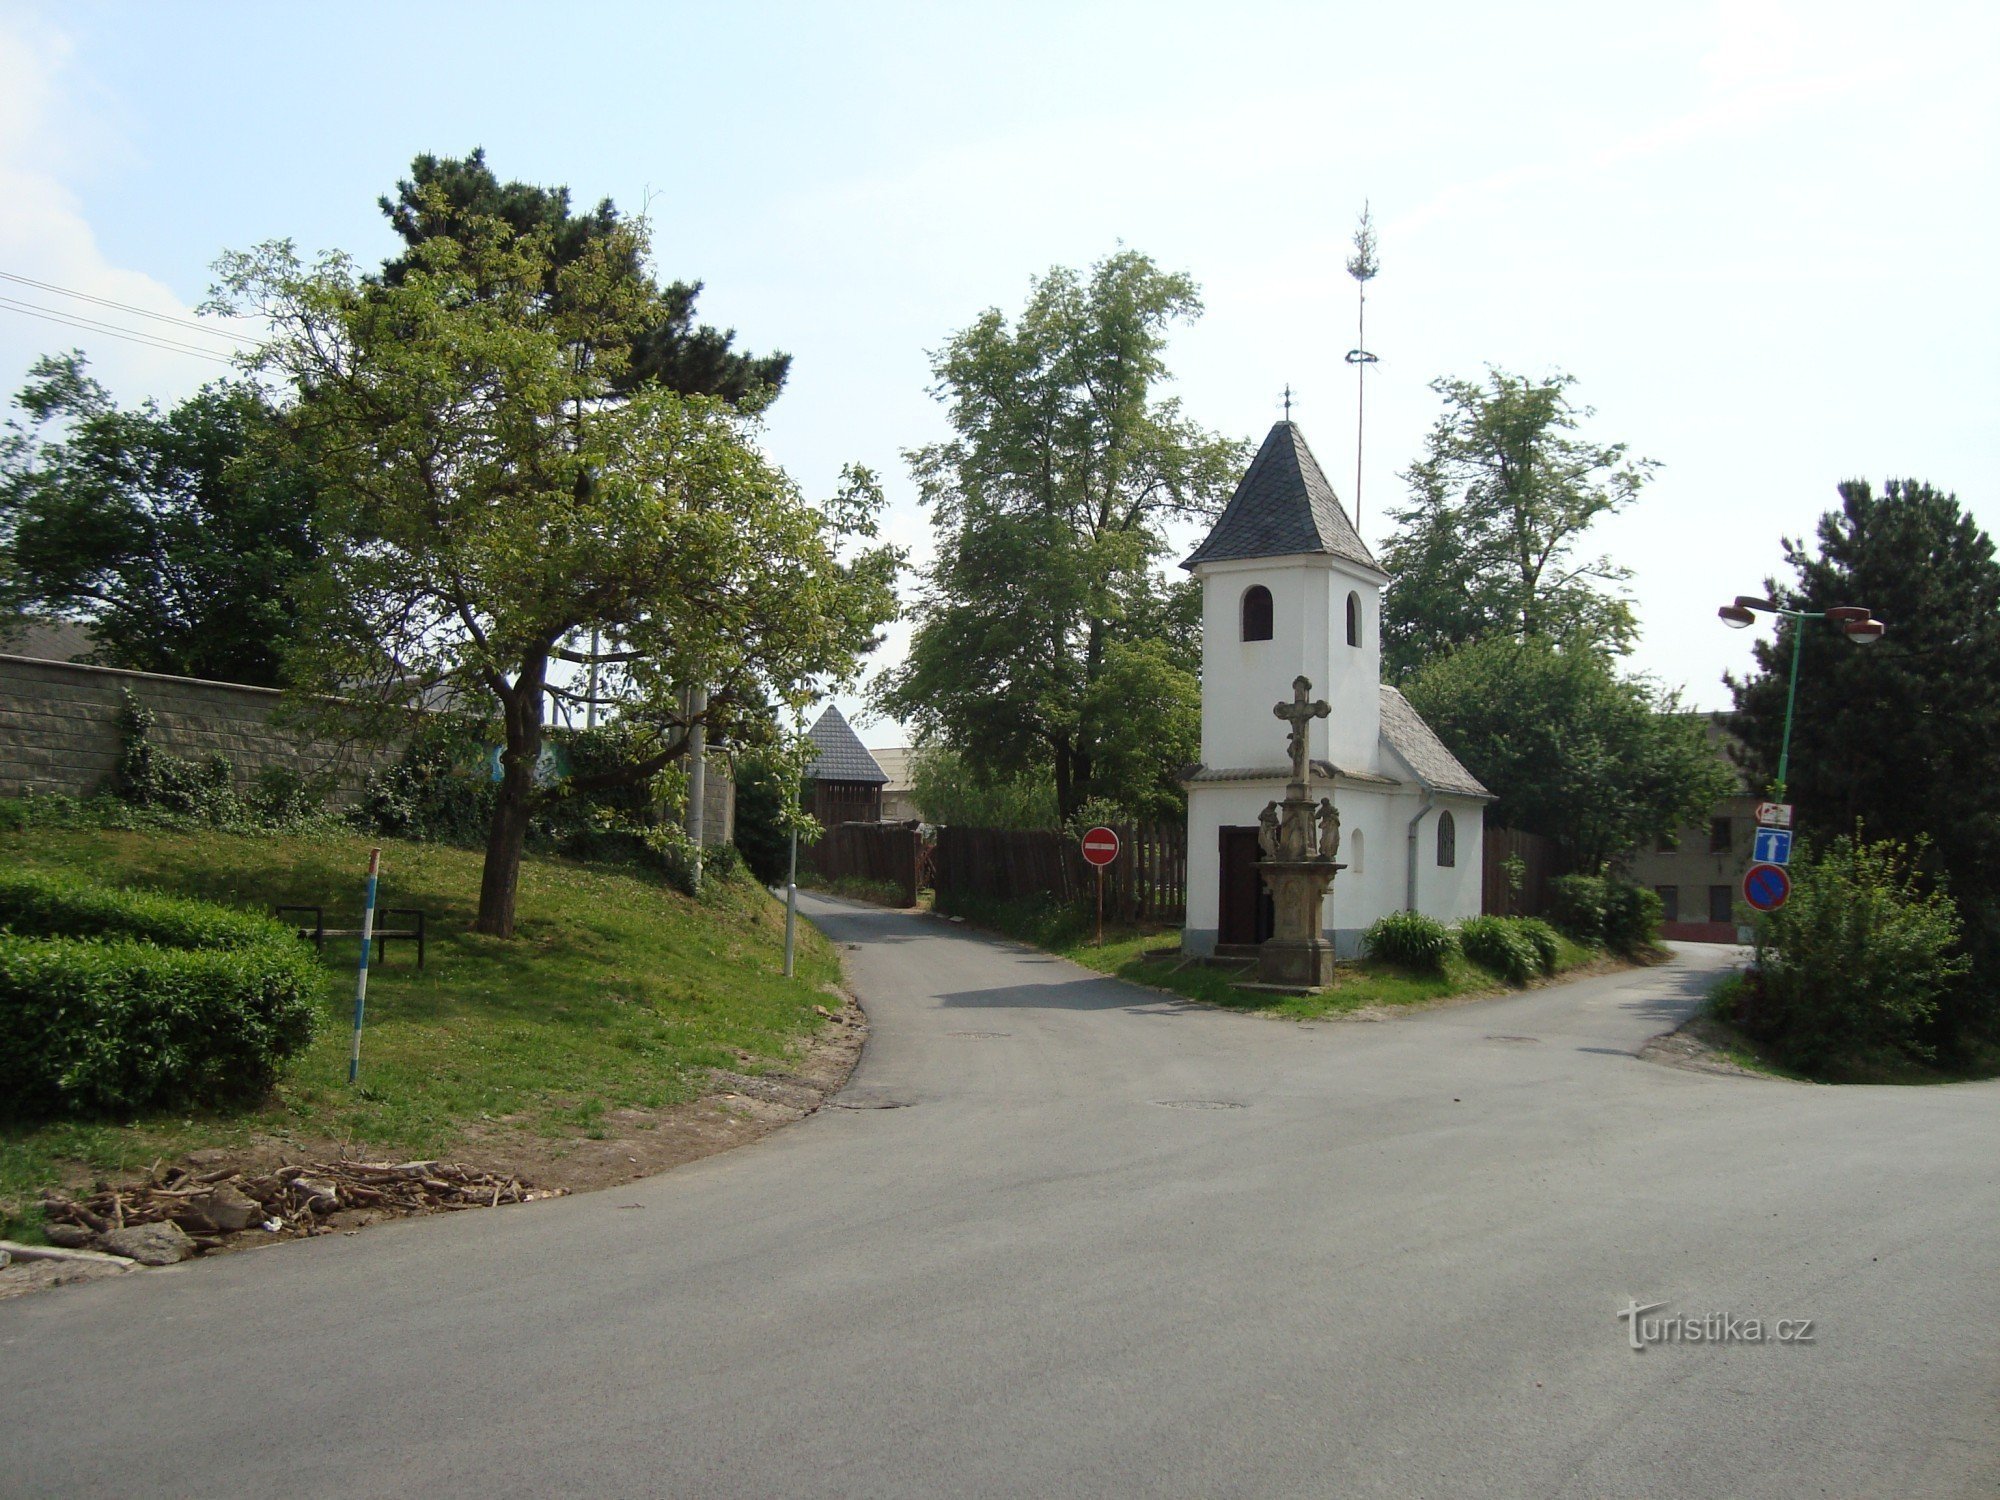 ポプラ - Nedbalova通りの半戸建て住宅 - 1739年からの聖フロリアン礼拝堂と1861年からの十字架